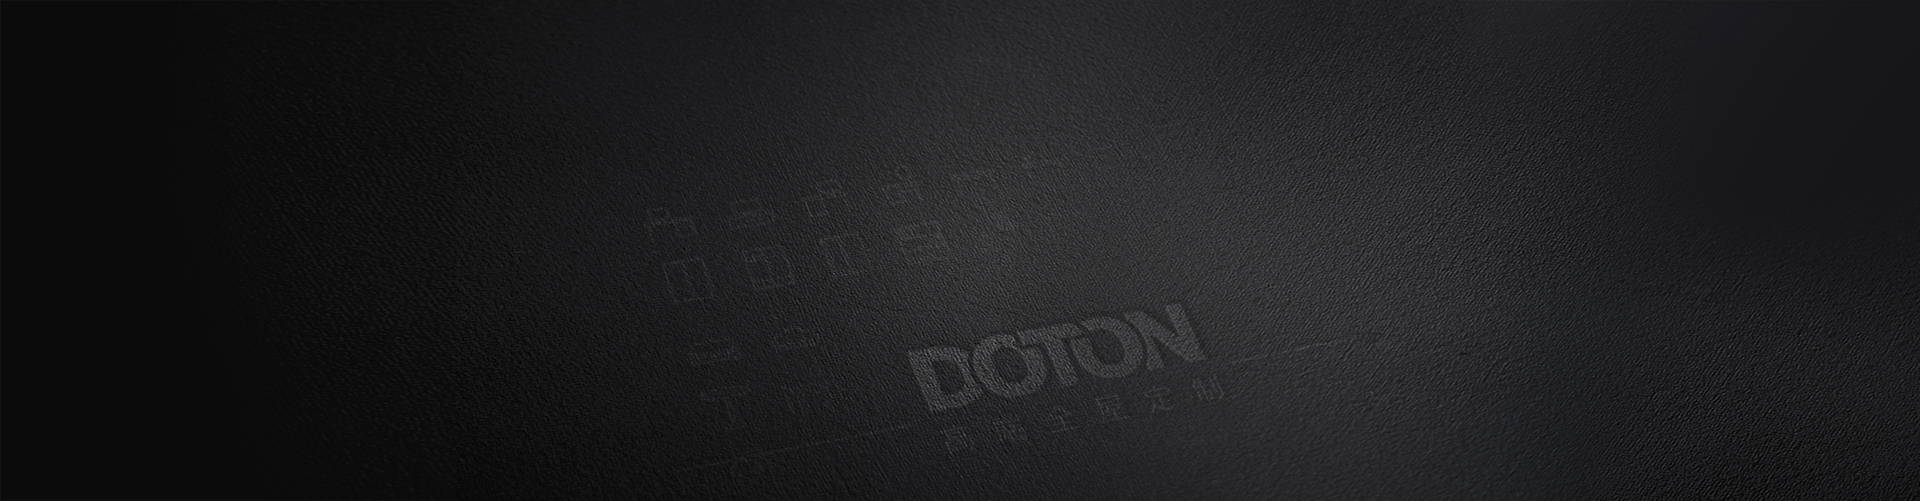 DOTON-2-NEW-1_s